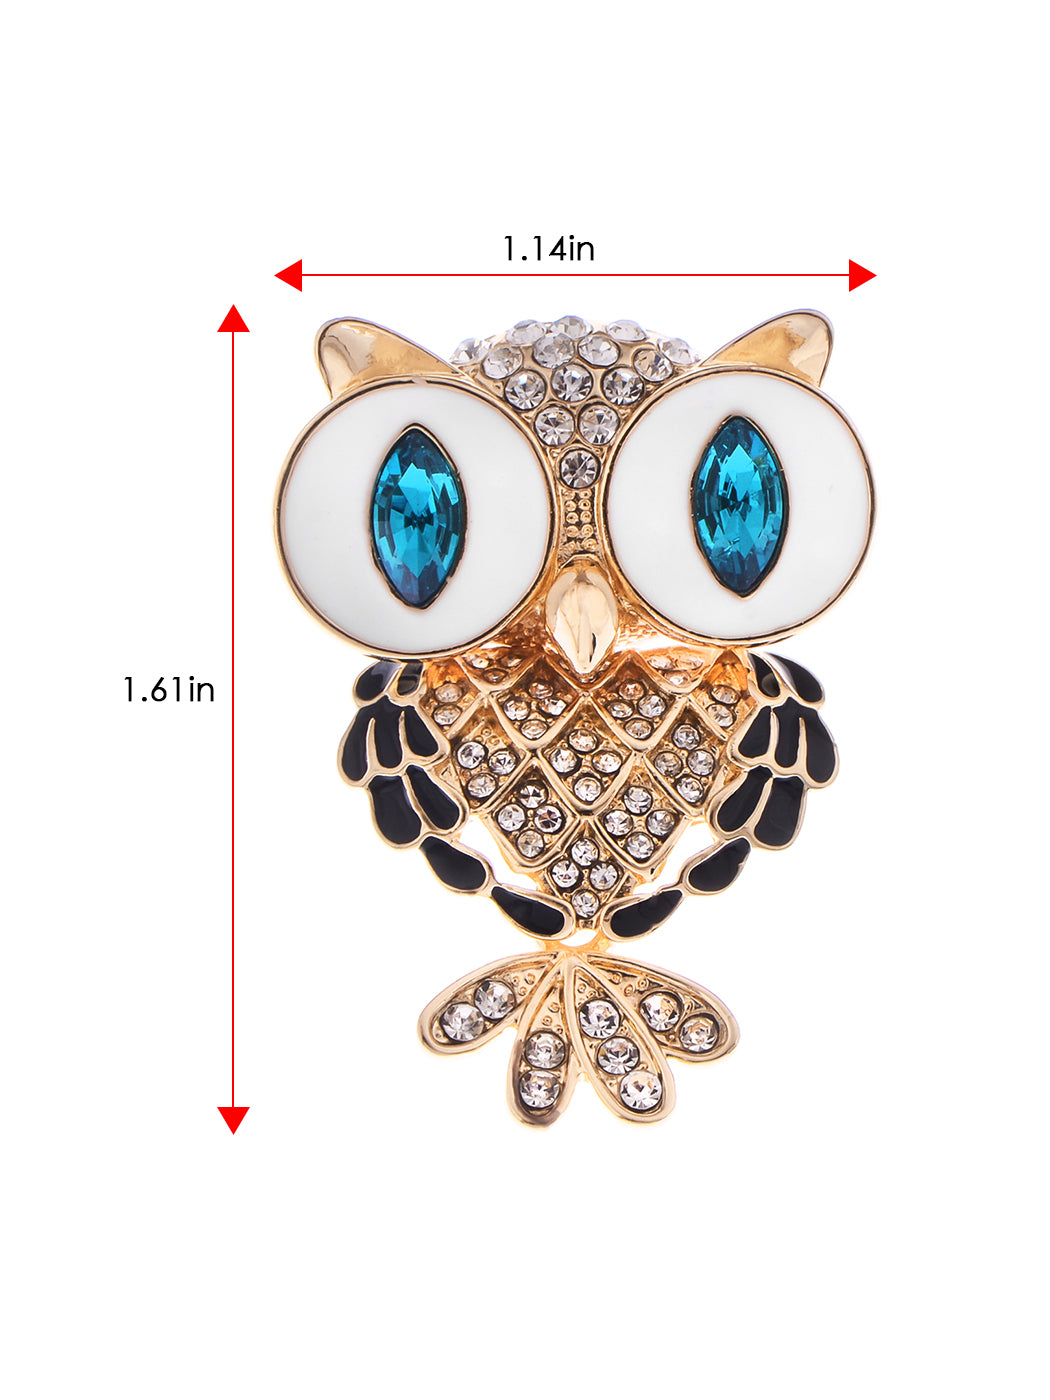 Stunning Captivating Topaz Big Eyed Owl Bird Pin Brooch